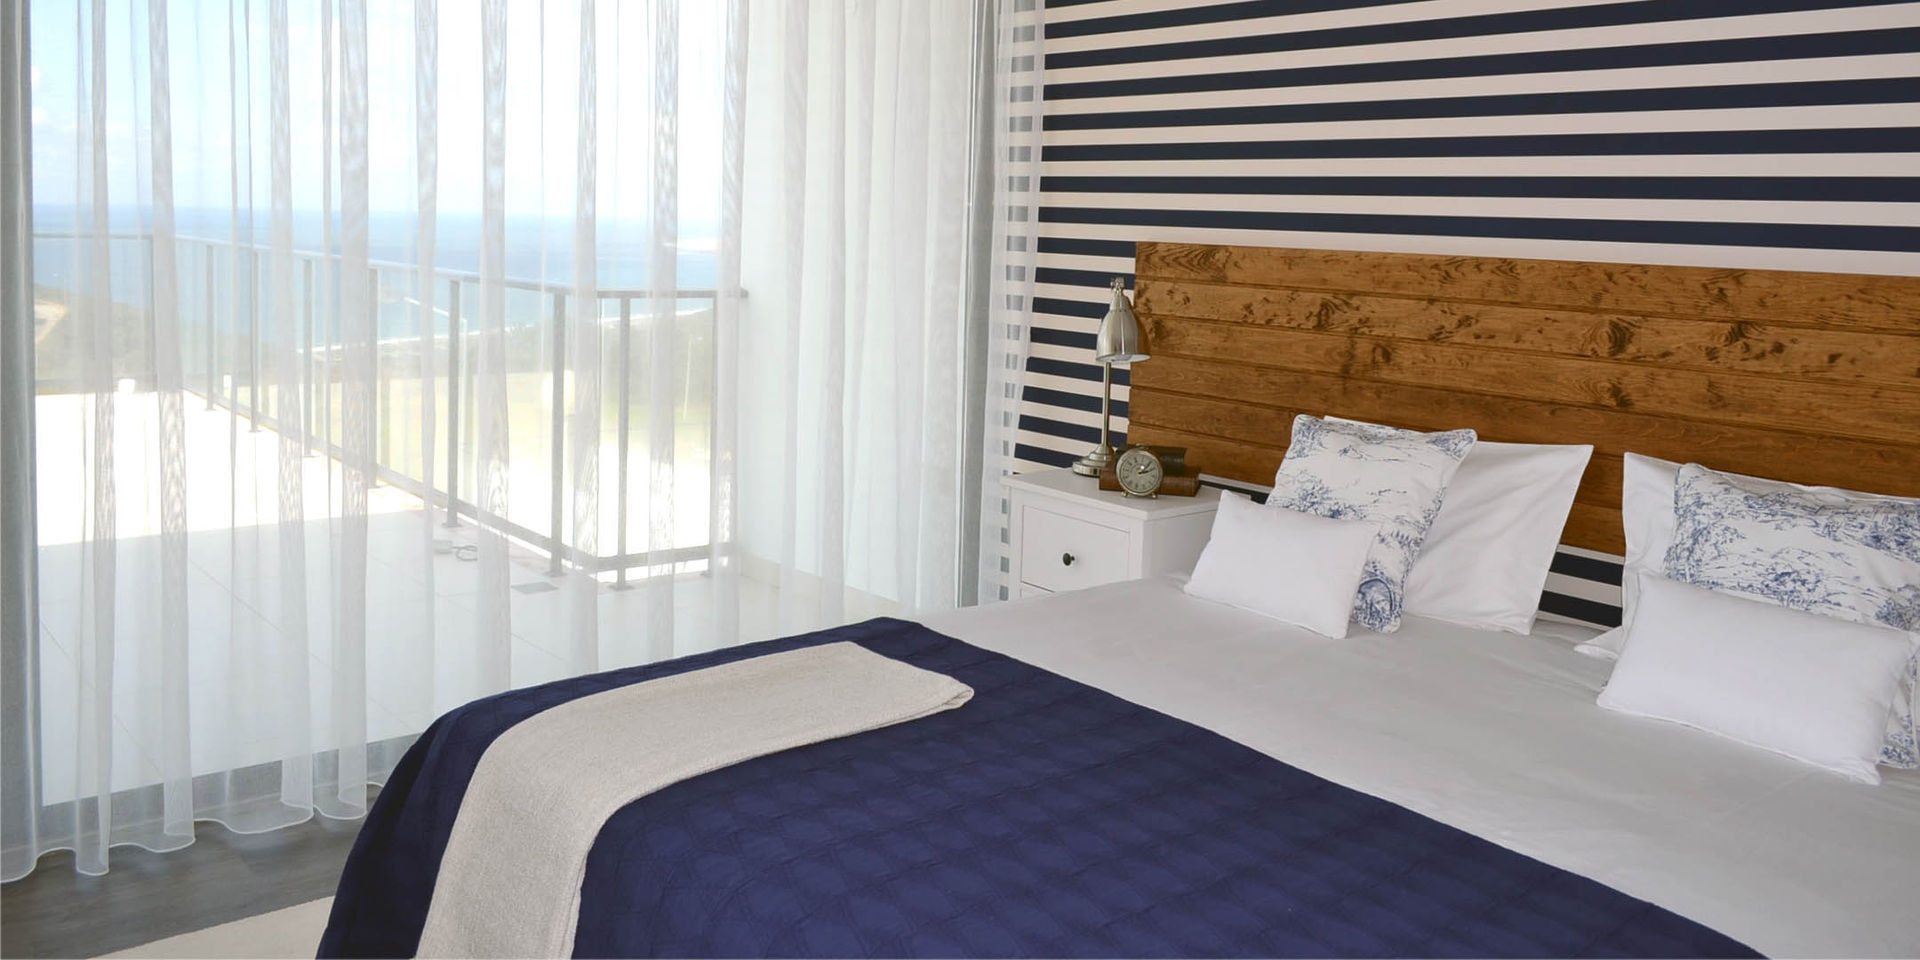 011 | Casa de Praia, Serra da Pescaria, Nazaré, T2 Arquitectura & Interiores T2 Arquitectura & Interiores Eclectic style bedroom